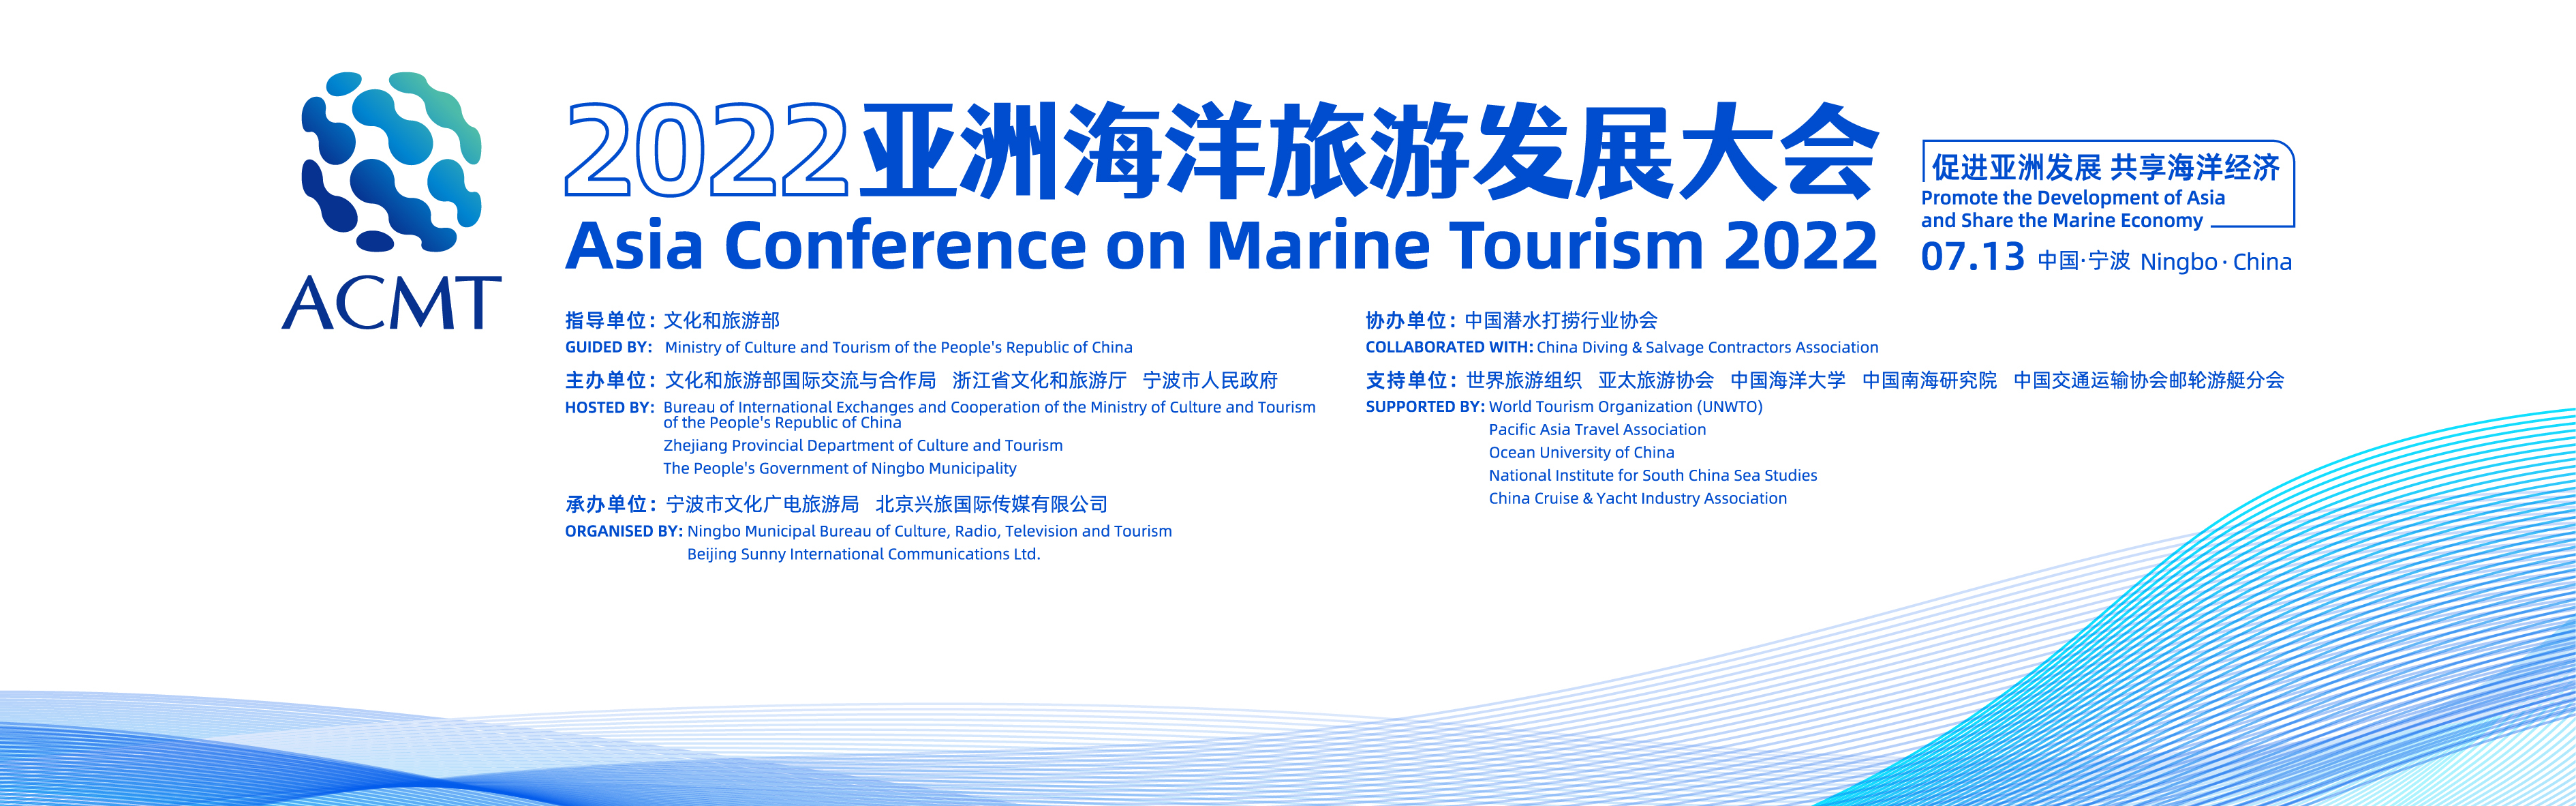 首届亚洲海洋旅游发展大会将于宁波举行